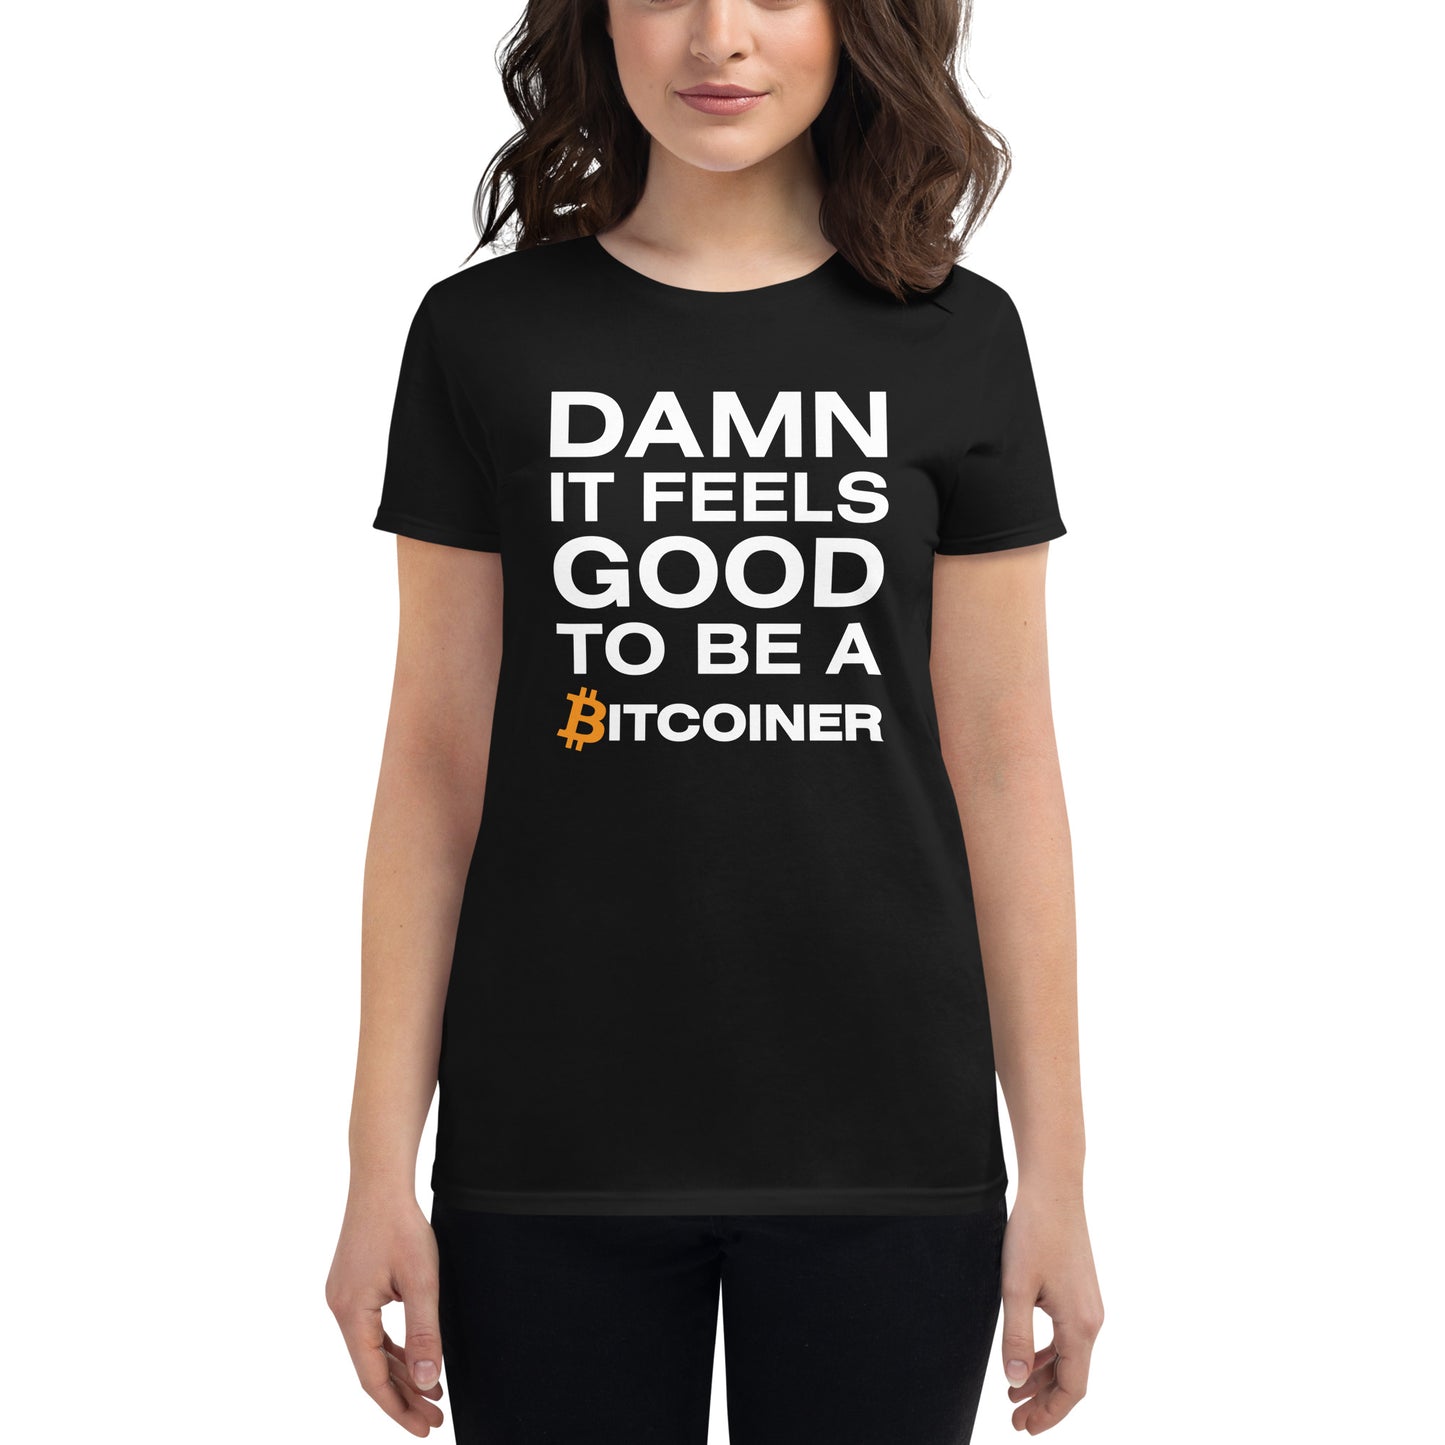 Damn it Feels Good to be a Bitcoiner Women's short sleeve t-shirt